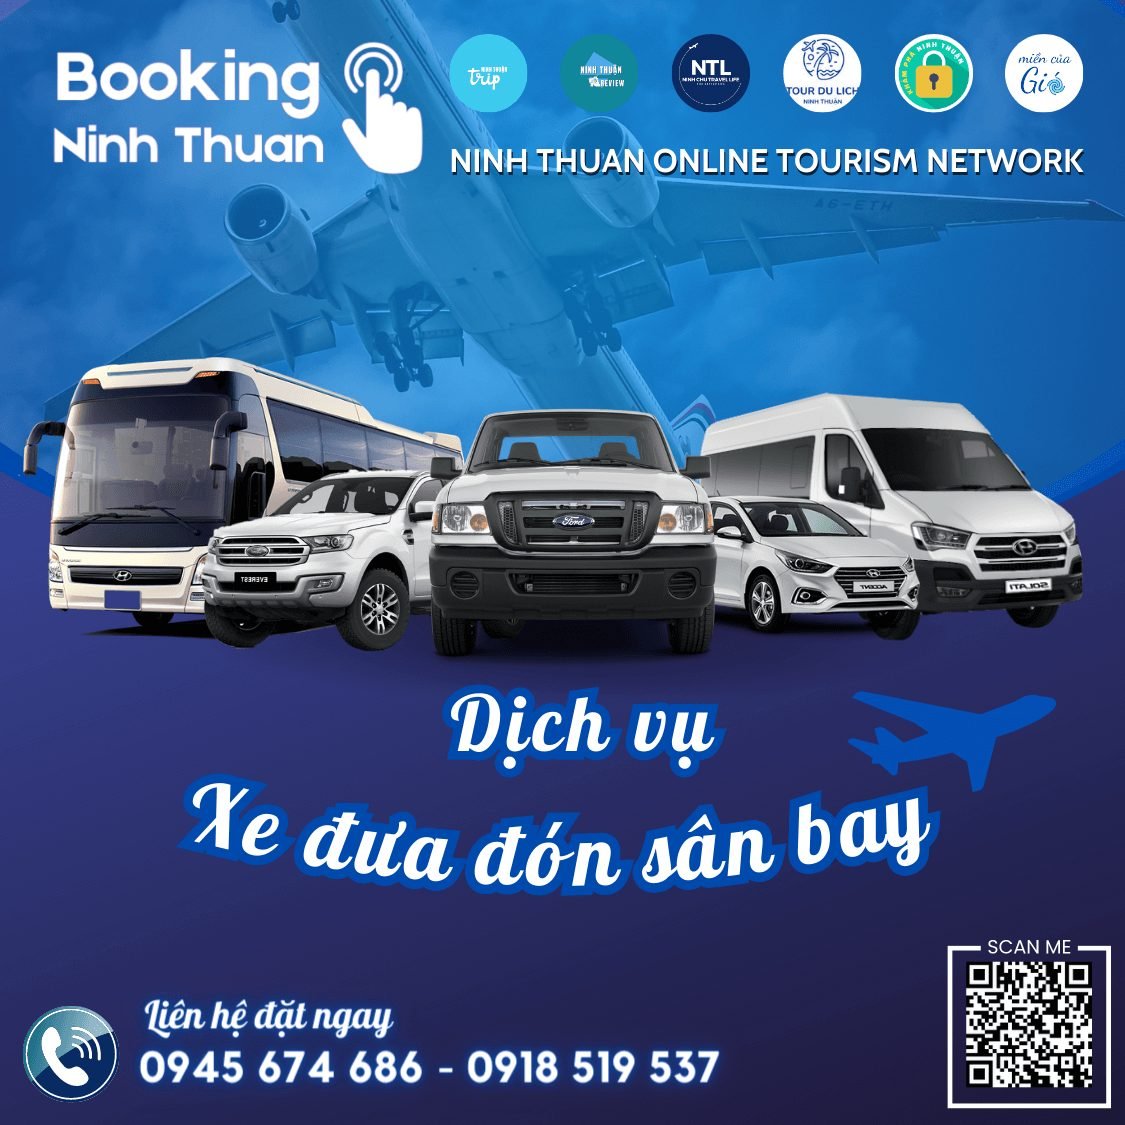 Booking Ninh Thuan là địa chỉ đặt thuê đưa đón sân bay Cam Ranh Vinh Hy tốt nhất hiện nay. Ảnh: Booking Ninh Thuan